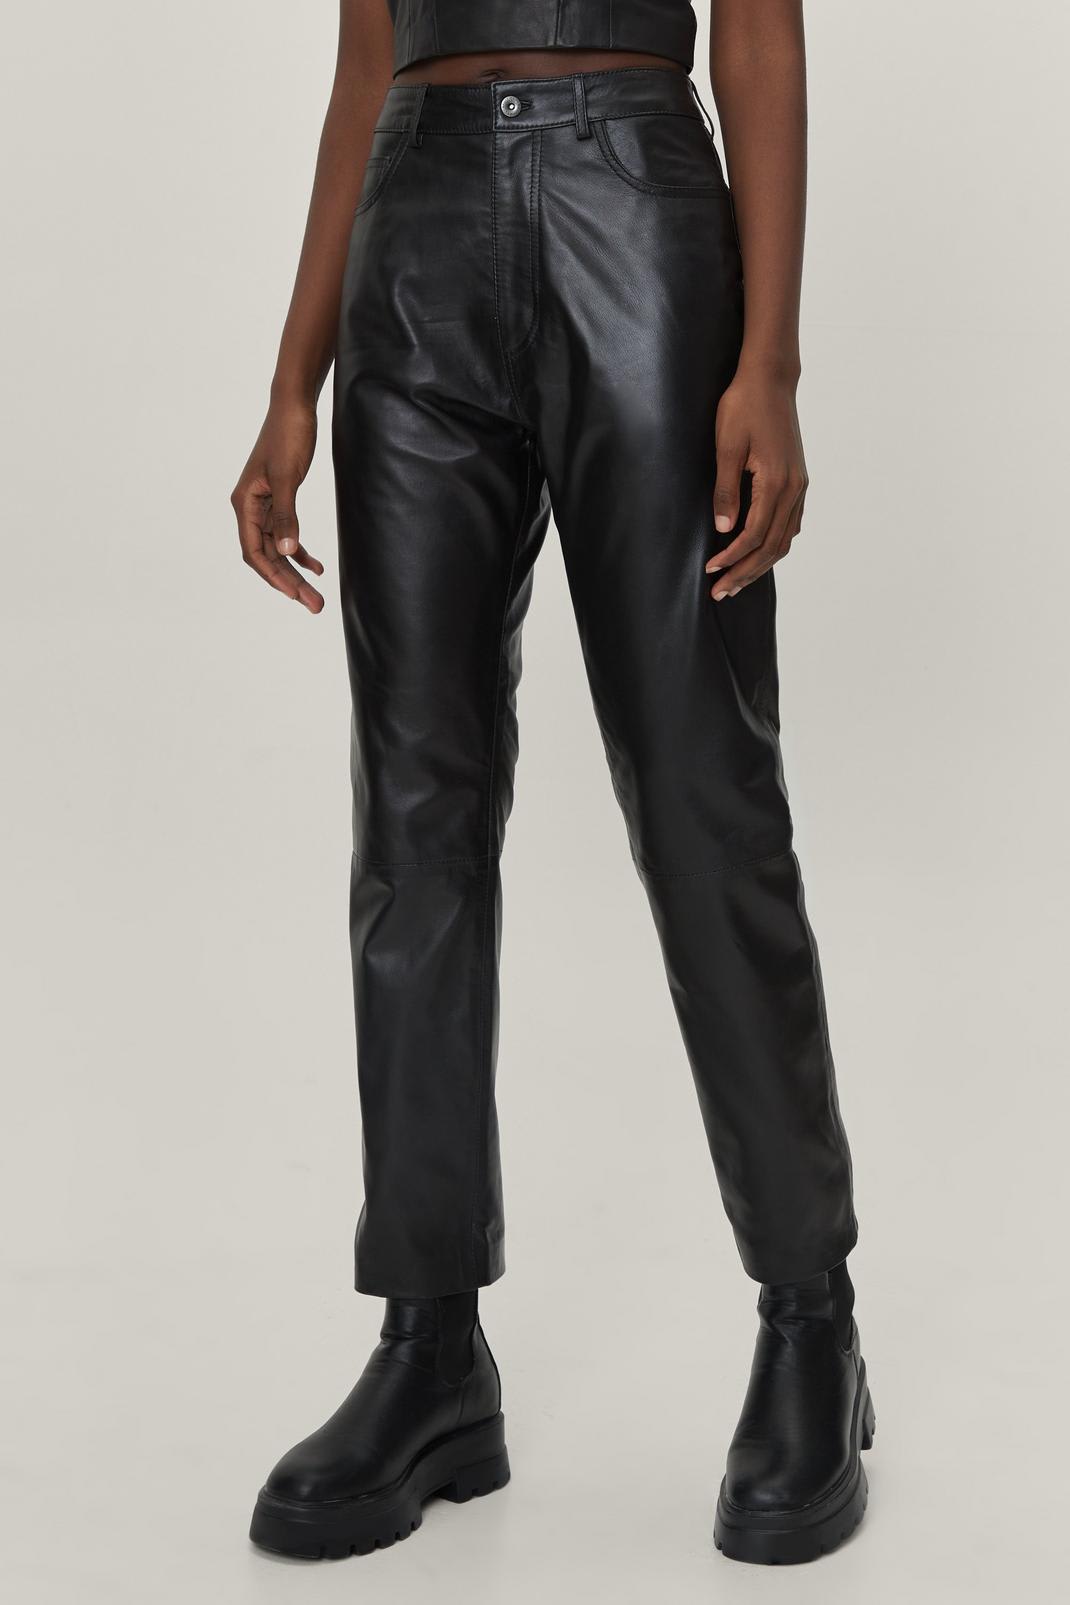 Black Vegan Leather Pants - Faux Leather Pants - Pleather Pants